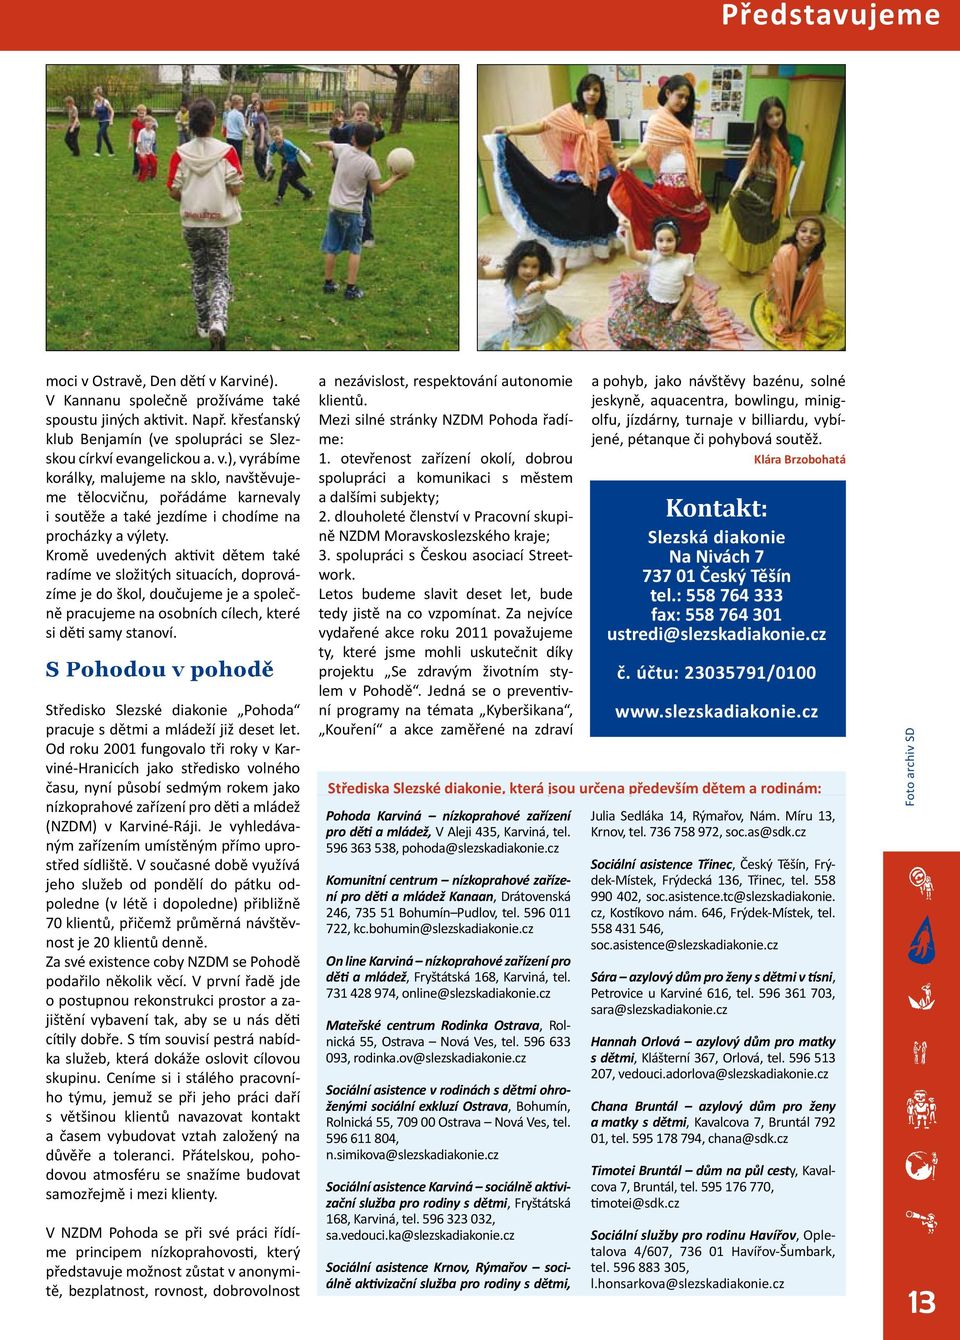 S Pohodou v pohodě Středisko Slezské diakonie Pohoda pracuje s dětmi a mládeží již deset let.